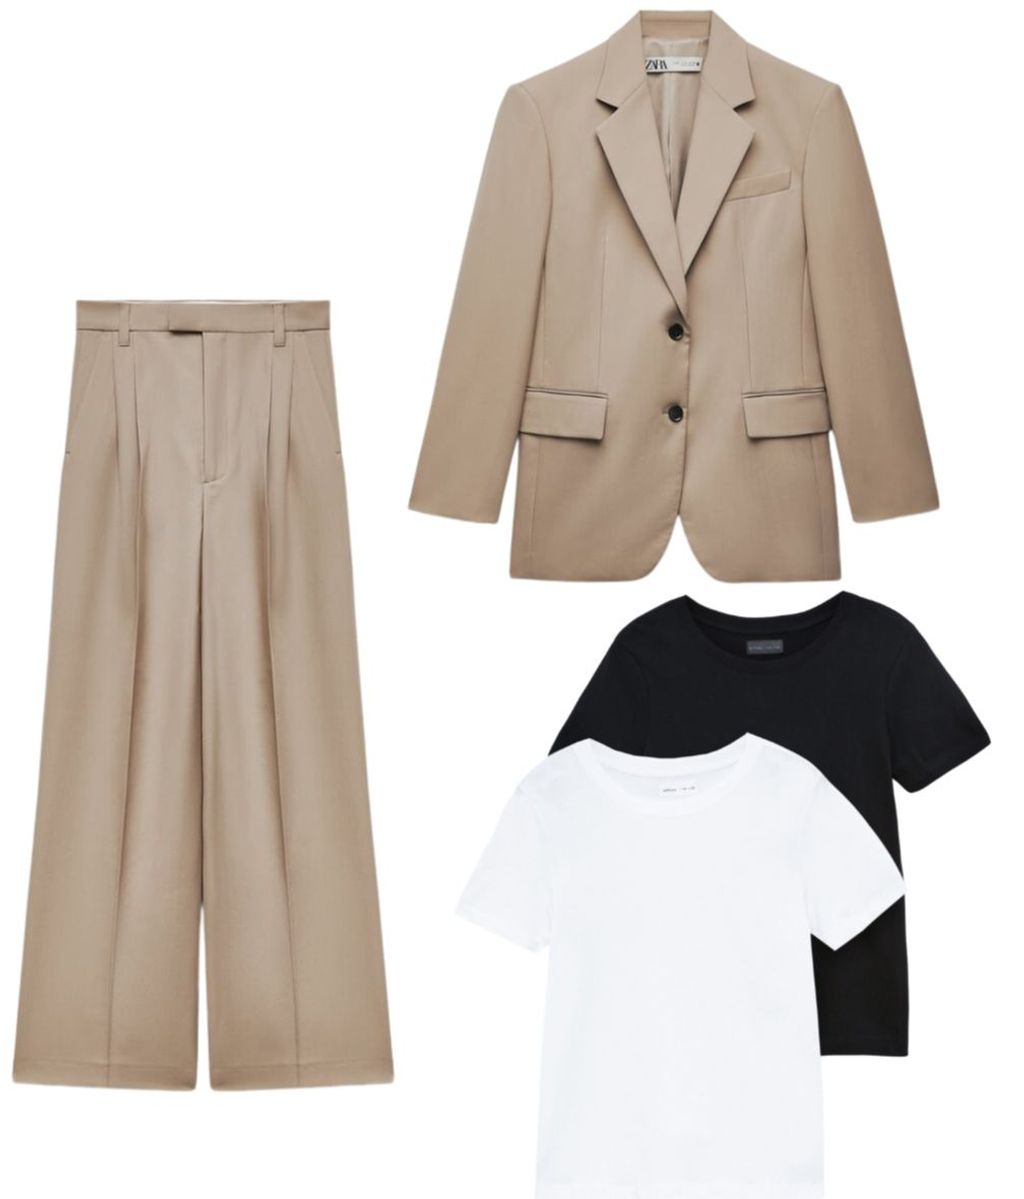 Traje de chaqueta de Zara (el pantalón cuesta 69,95€ y la blazer 39,95€)